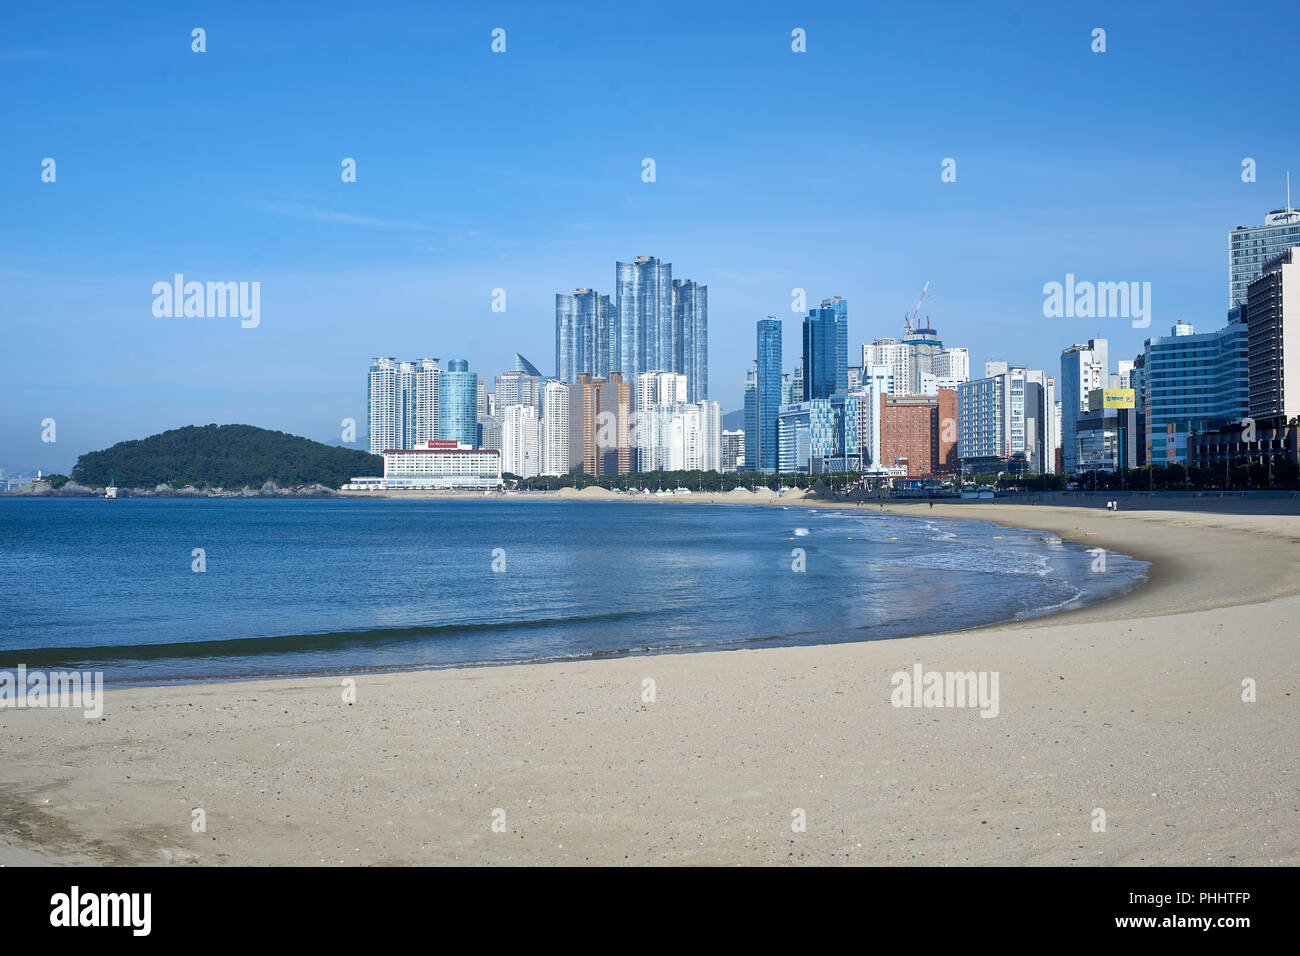 Haeundae Beach, Busan - early summer morning, clear sky and calm sea. Stock Photo